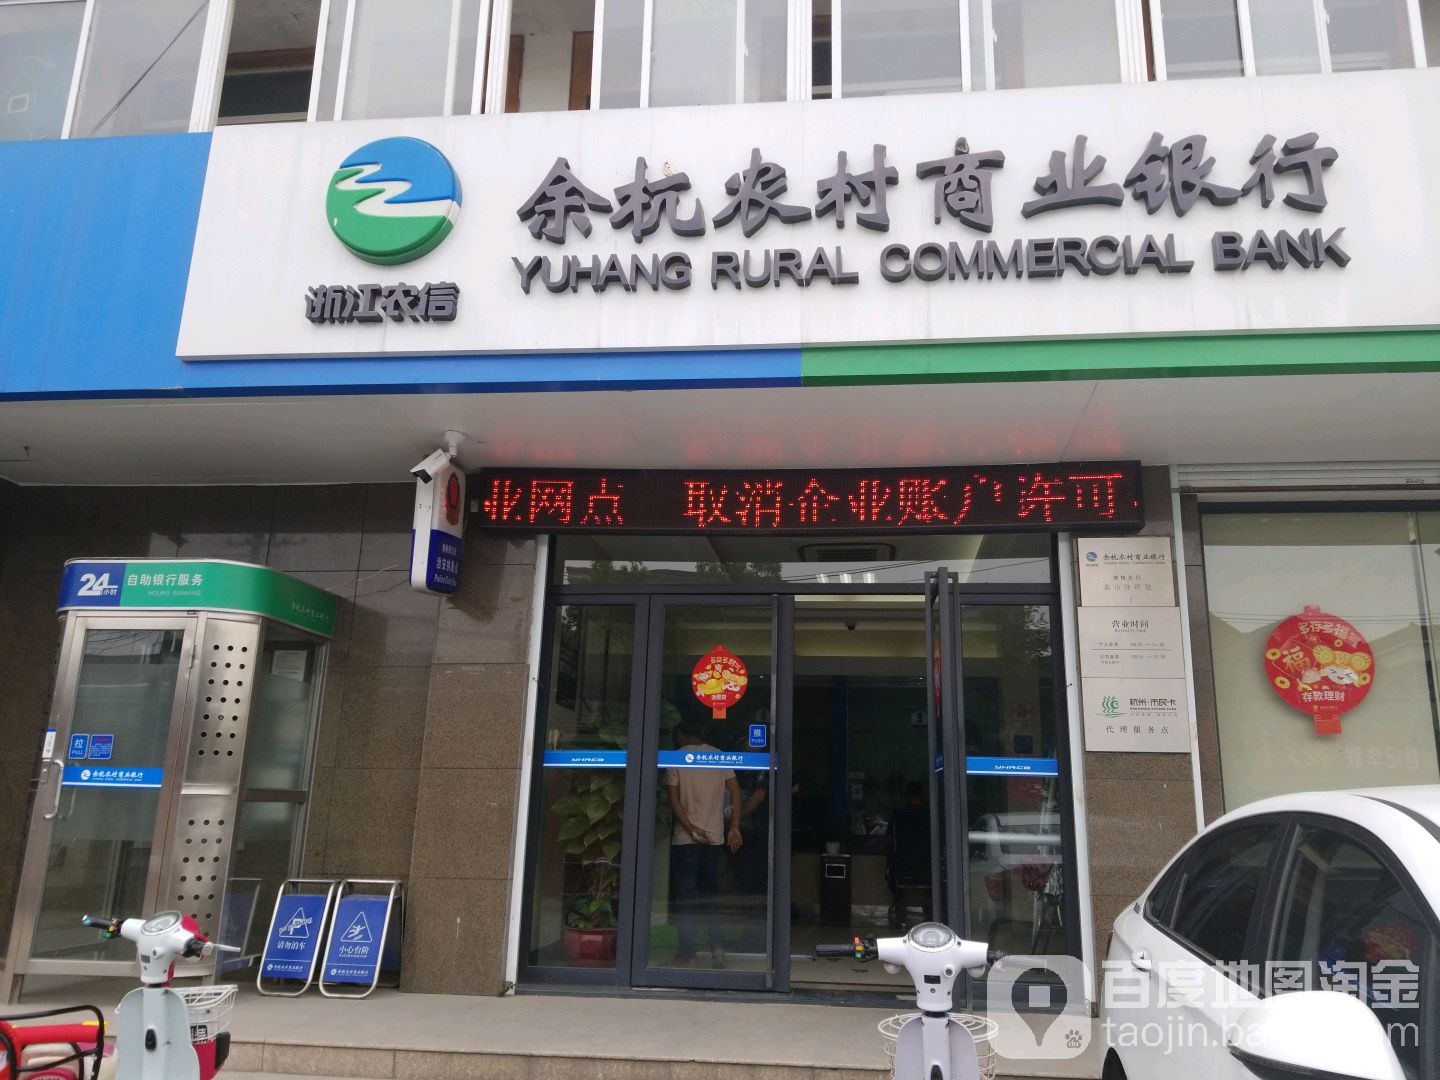 余杭农村商业银行24小时自助银行((泰山分理处)